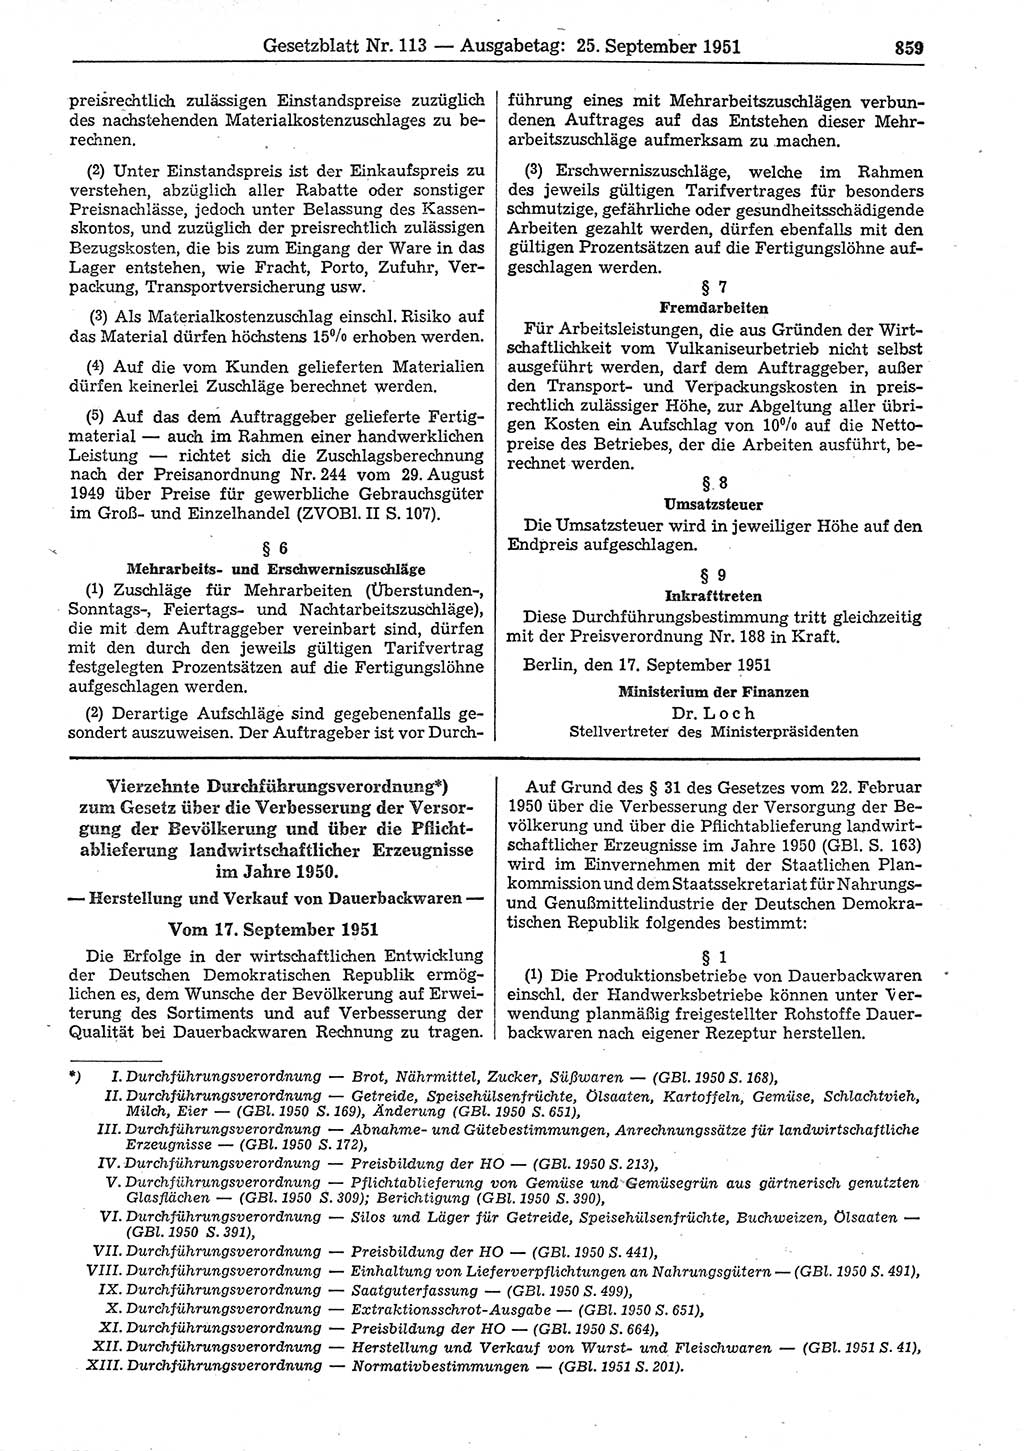 Gesetzblatt (GBl.) der Deutschen Demokratischen Republik (DDR) 1951, Seite 859 (GBl. DDR 1951, S. 859)